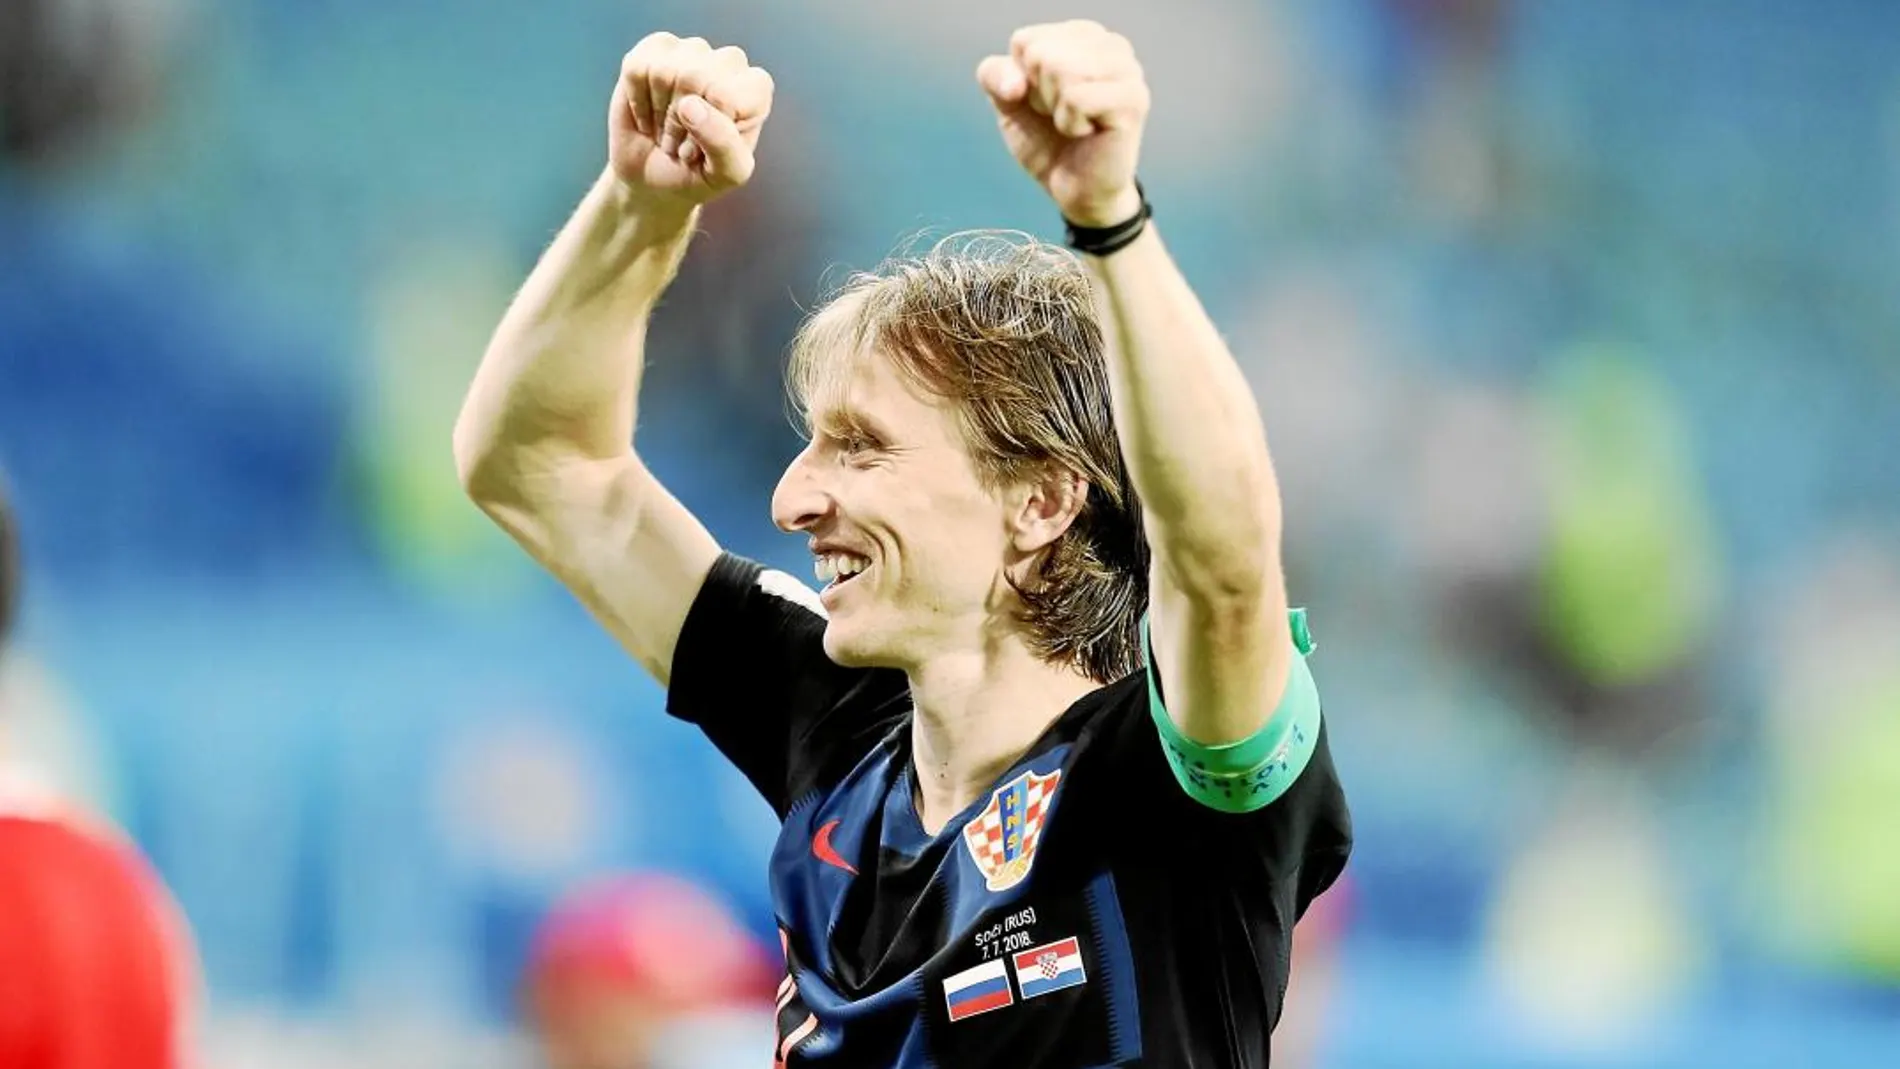 Luka Modric va a ser elegido Balón de Oro el próximo 3 de diciembre. El mejor futbolista de 2018